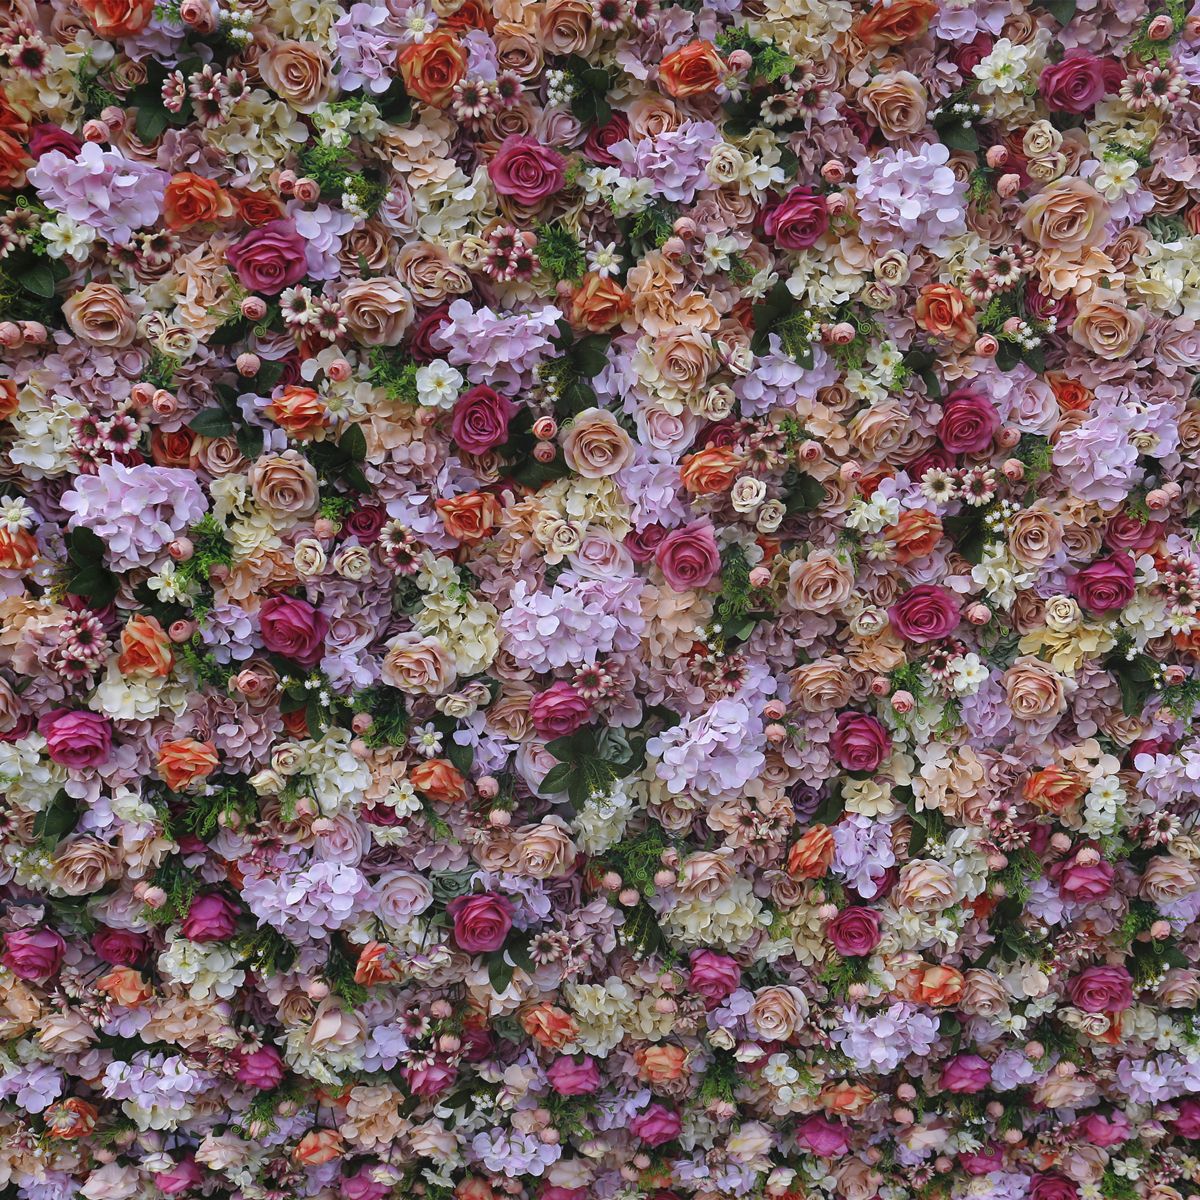  Simulated floral wall wedding decoration ການຕົບແຕ່ງນອກງານແຕ່ງງານນອກ 